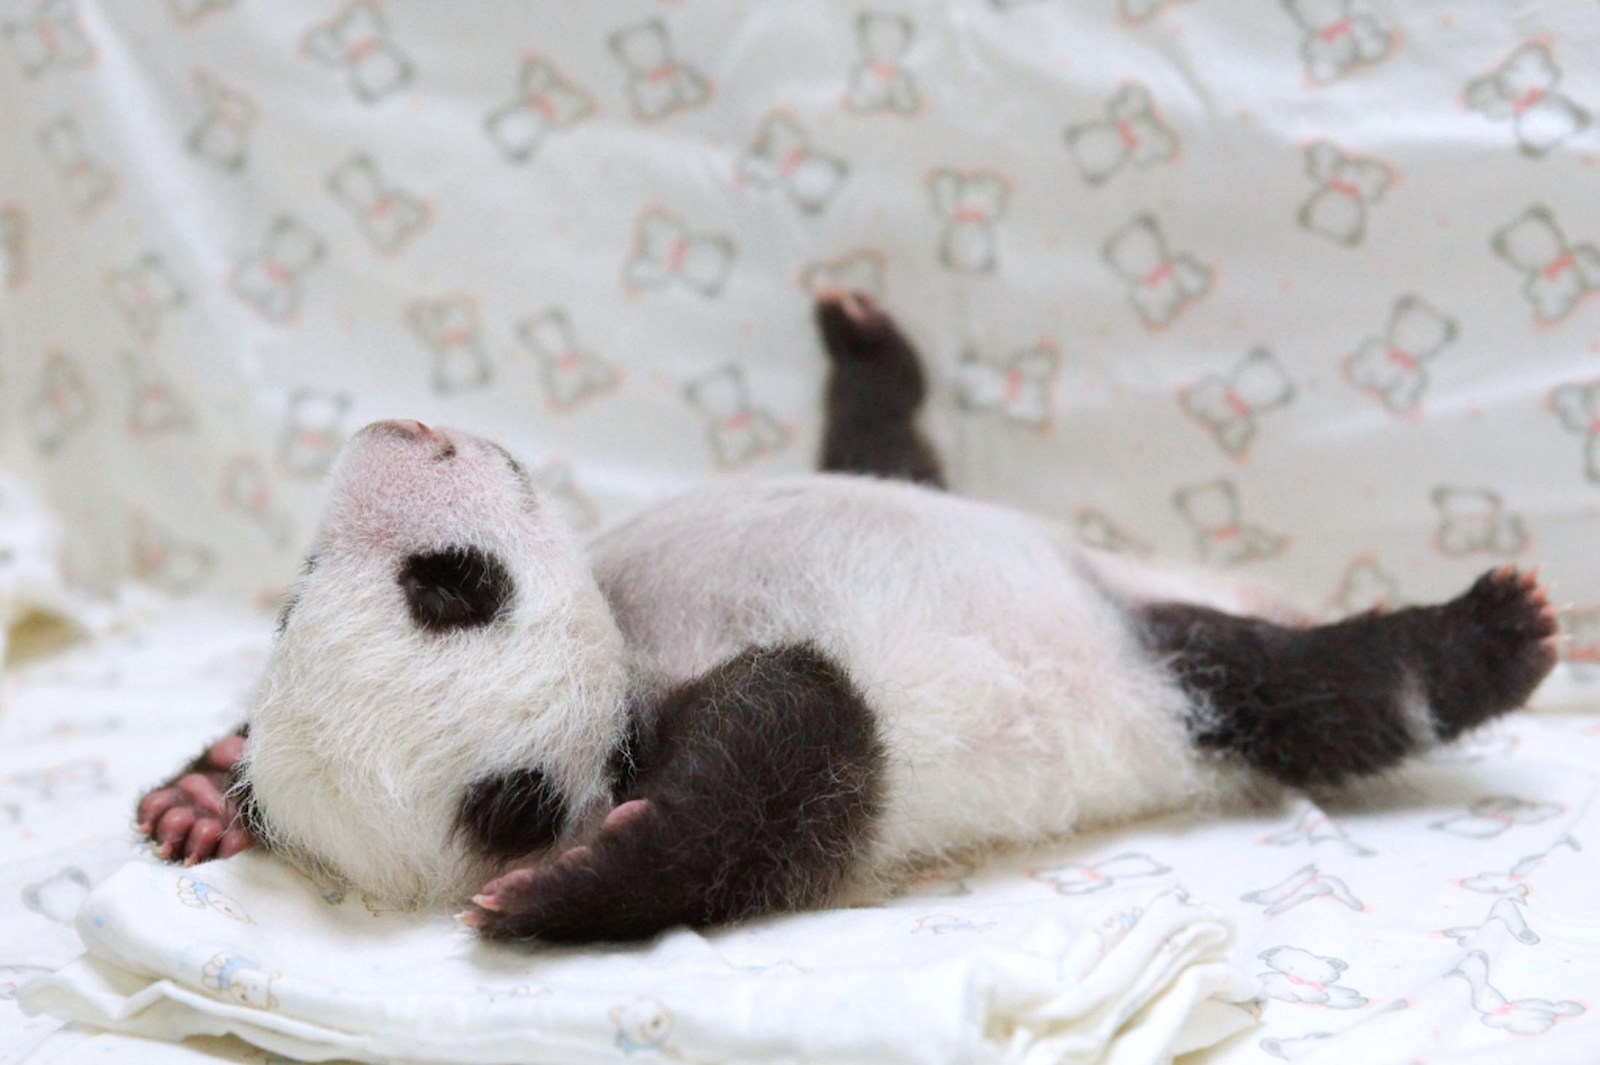 Панда лежит на спине